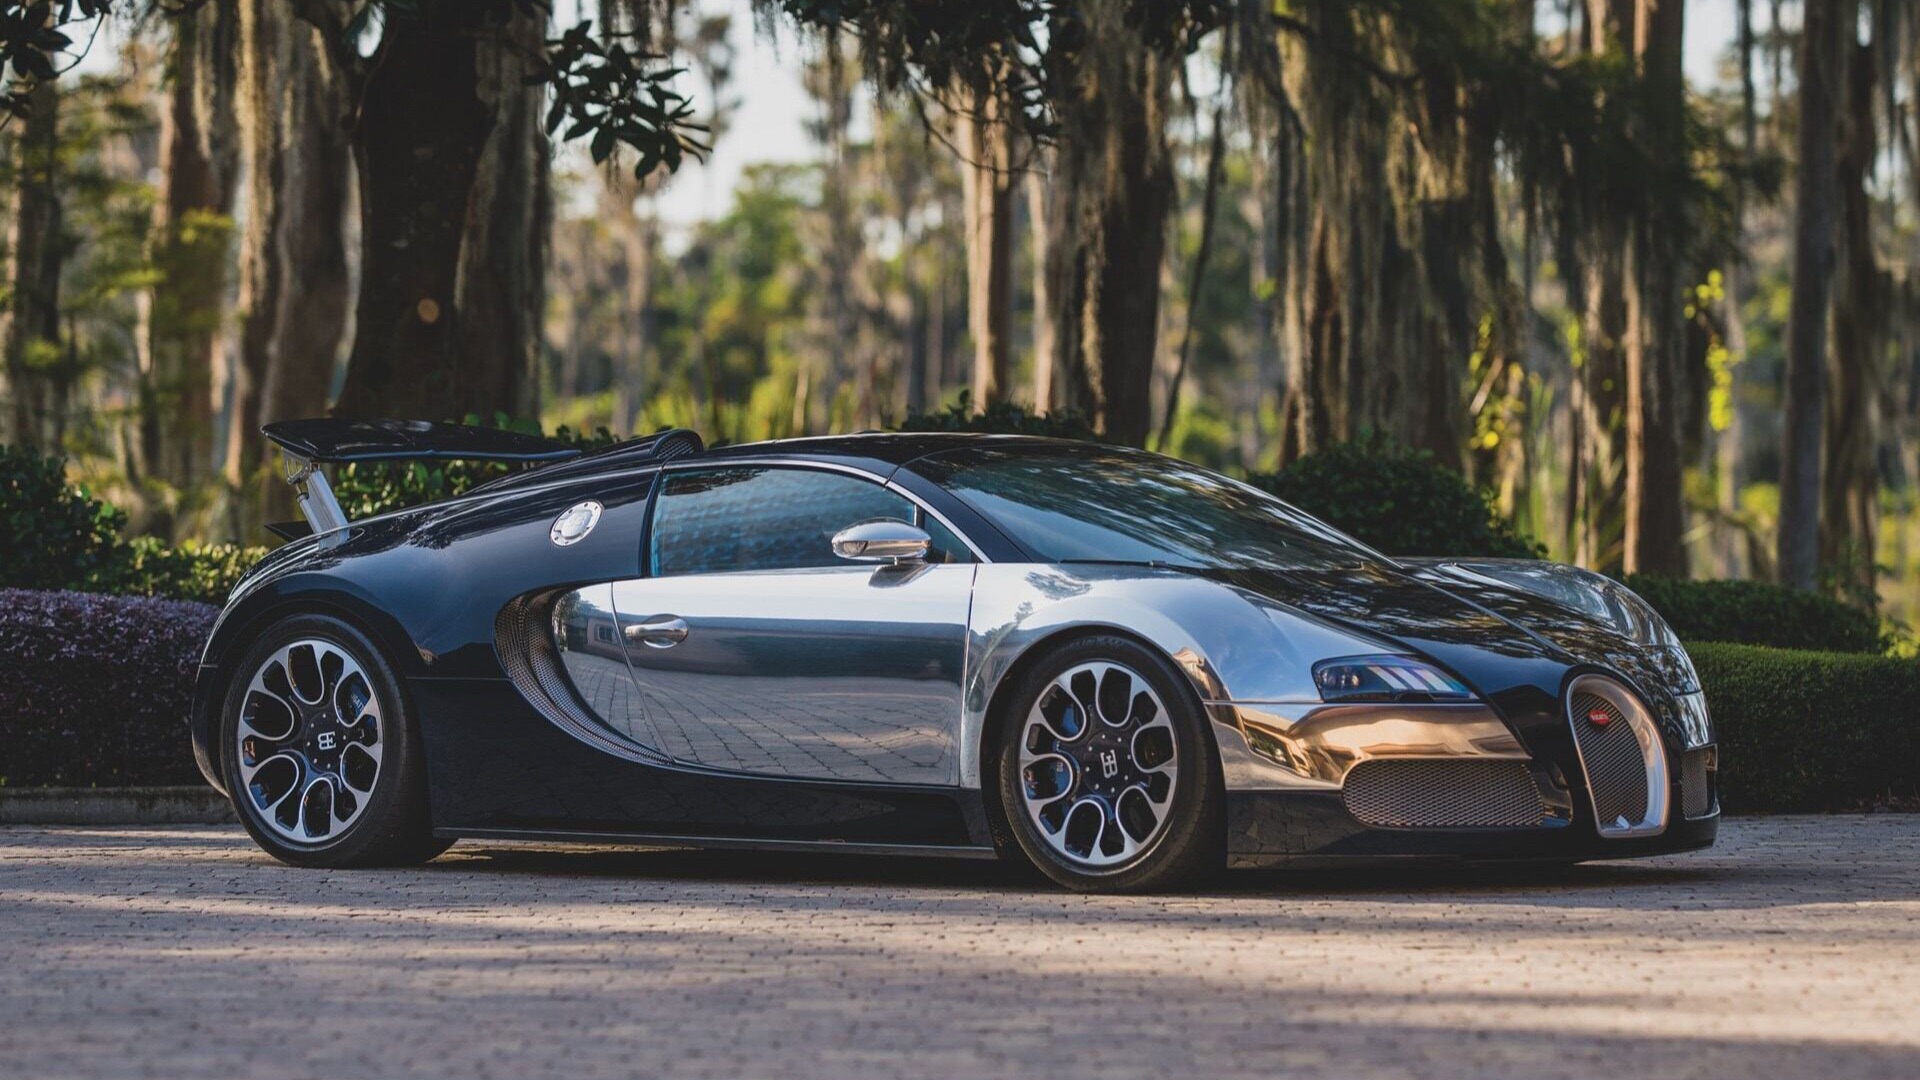 2010 Bugatti Veyron 16.4 Grand Sport ‘Sang Bleu’